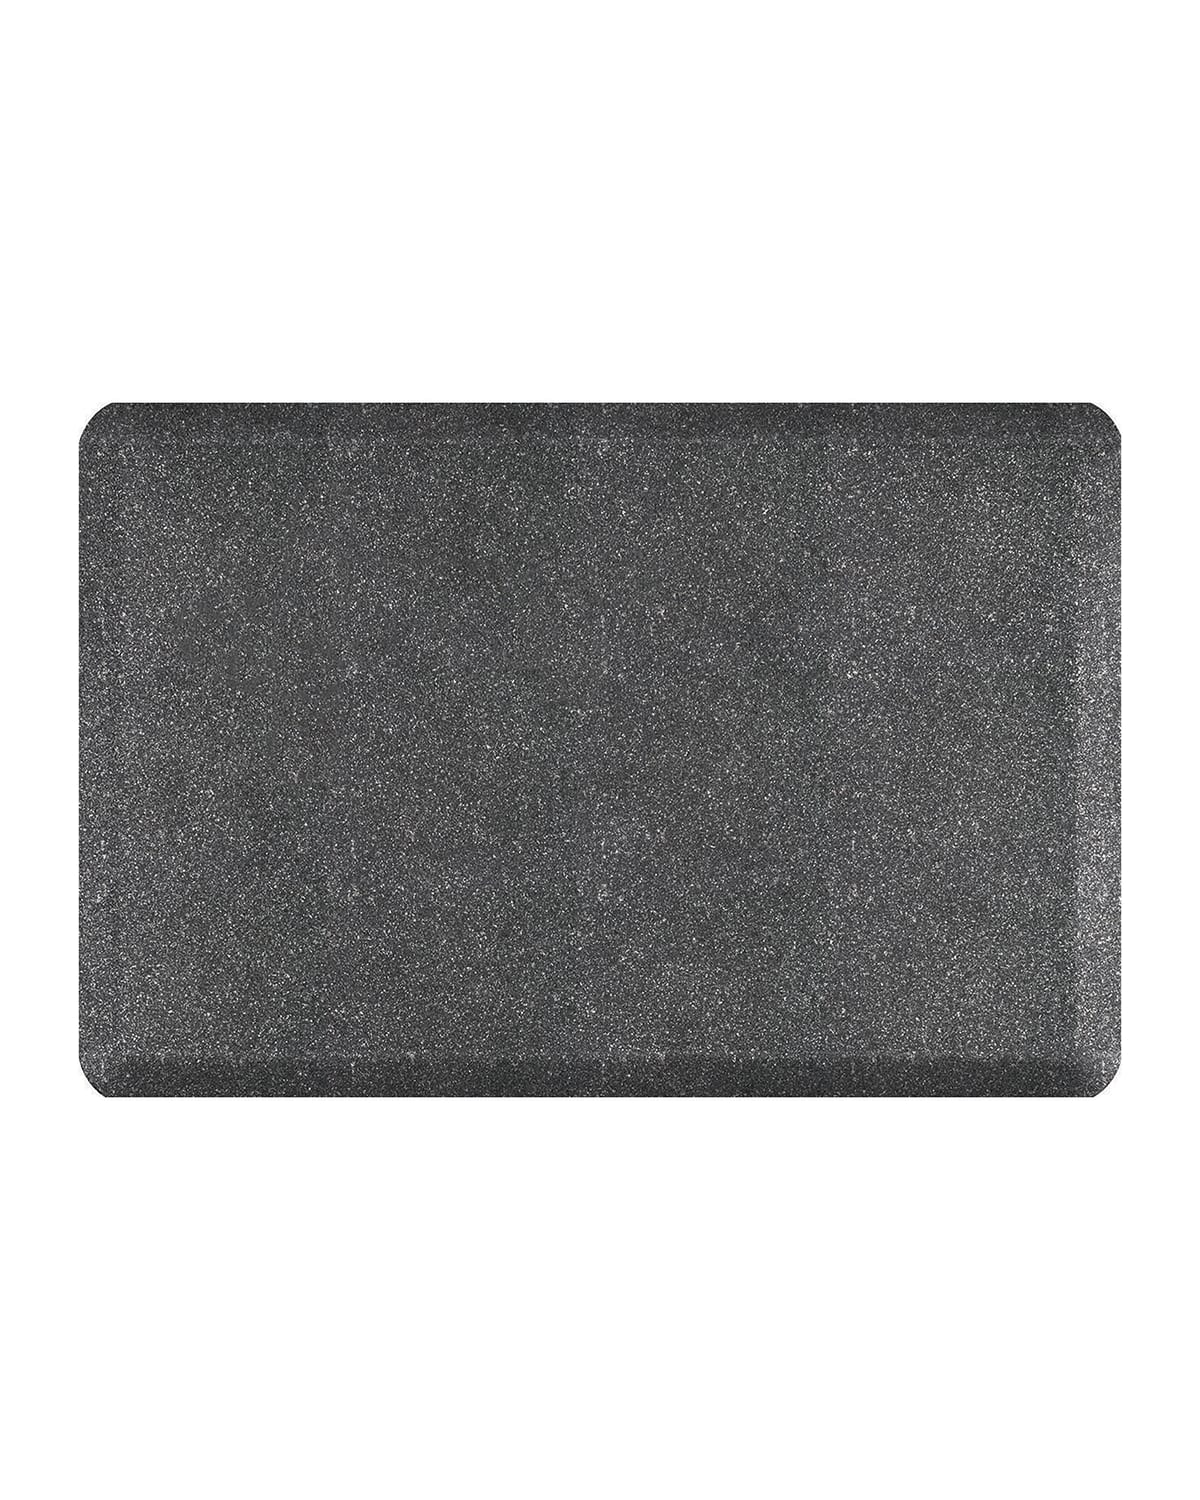 Wellnessmats Granite Anti-fatigue Kitchen Mat, 3' X 2' In Granite Steel